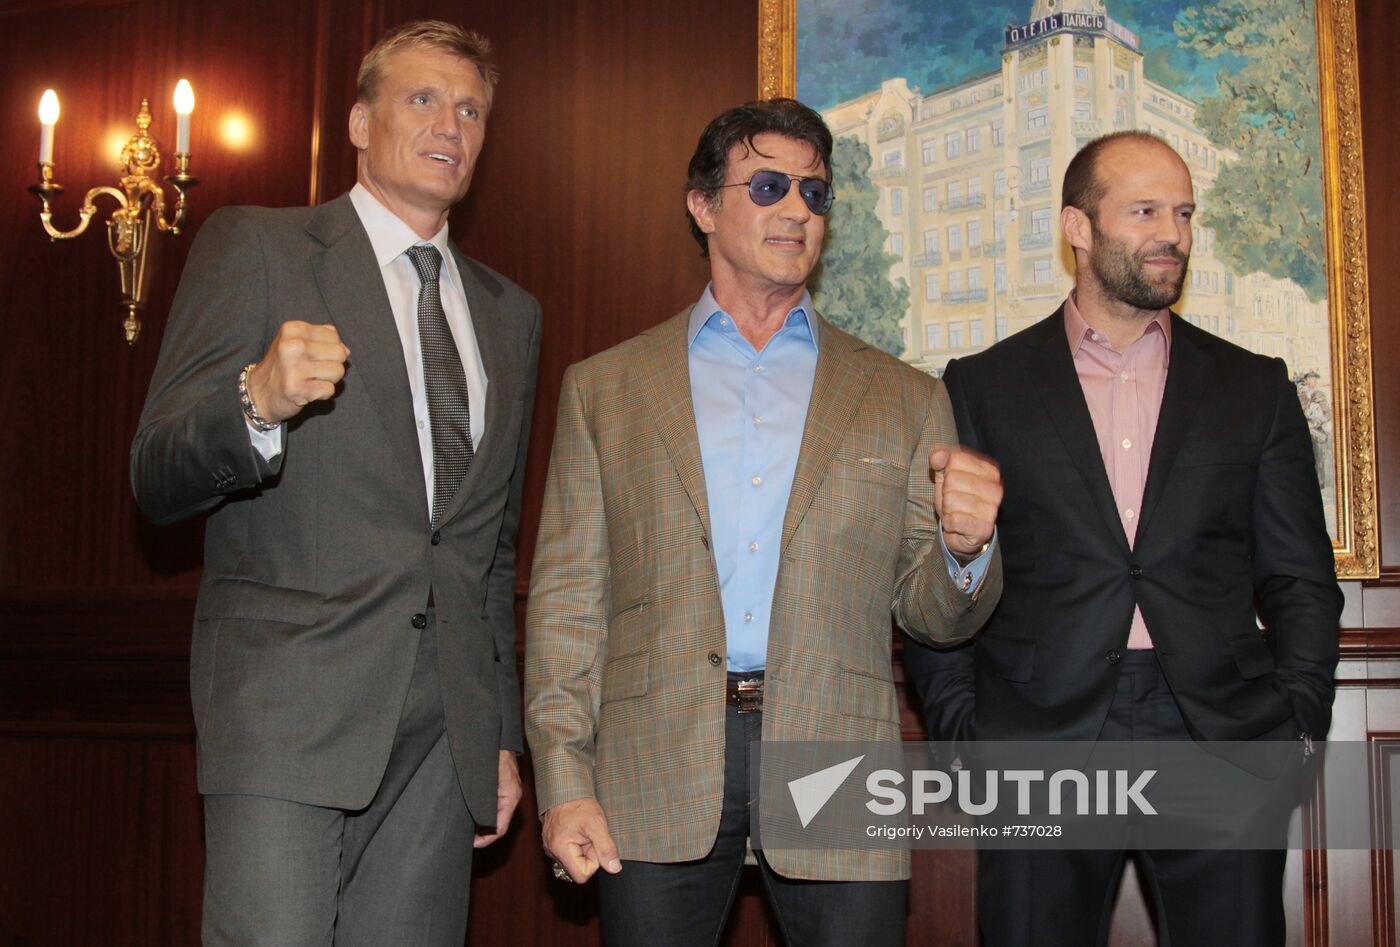 Dolph Lundgren, Sylvester Stallone and Jason Statham